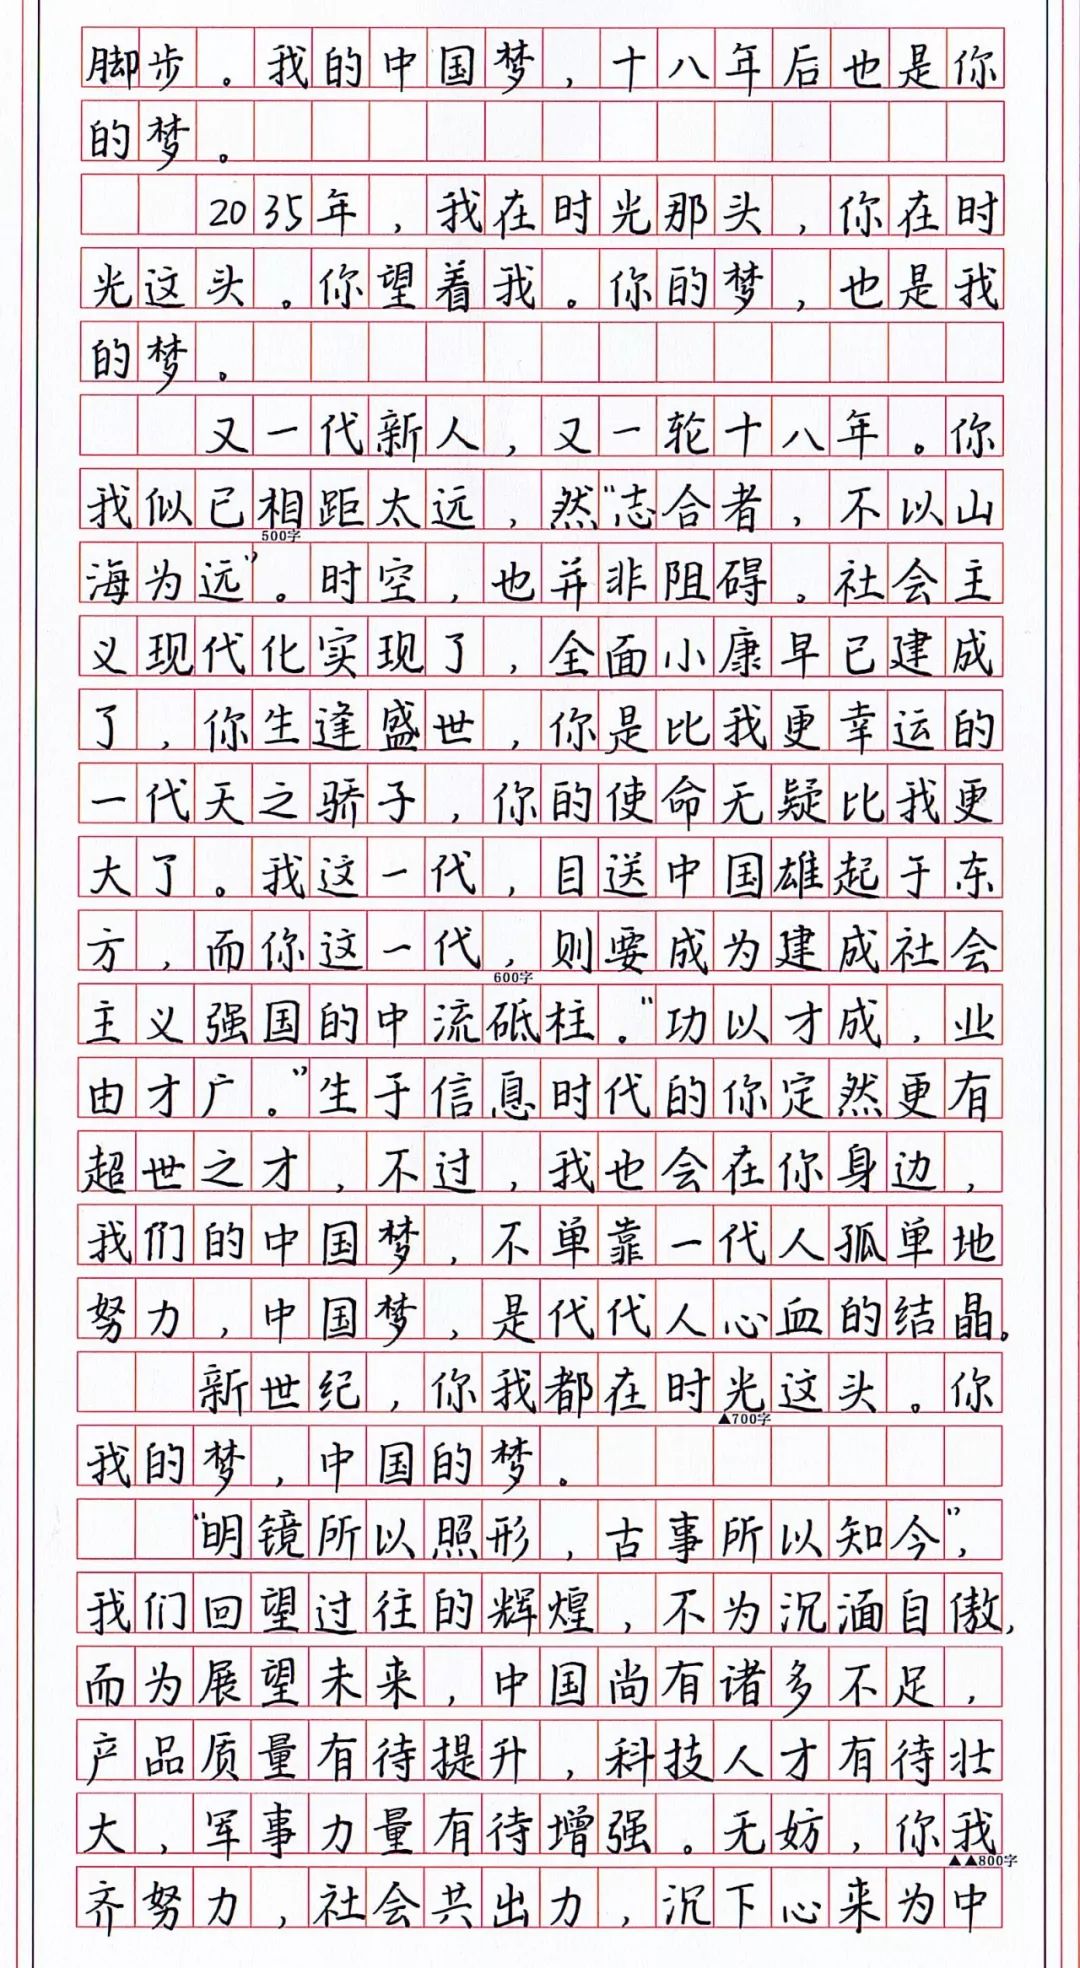 分_书法字体_字体设计作品-中国字体设计网_ziti.cndesign.com